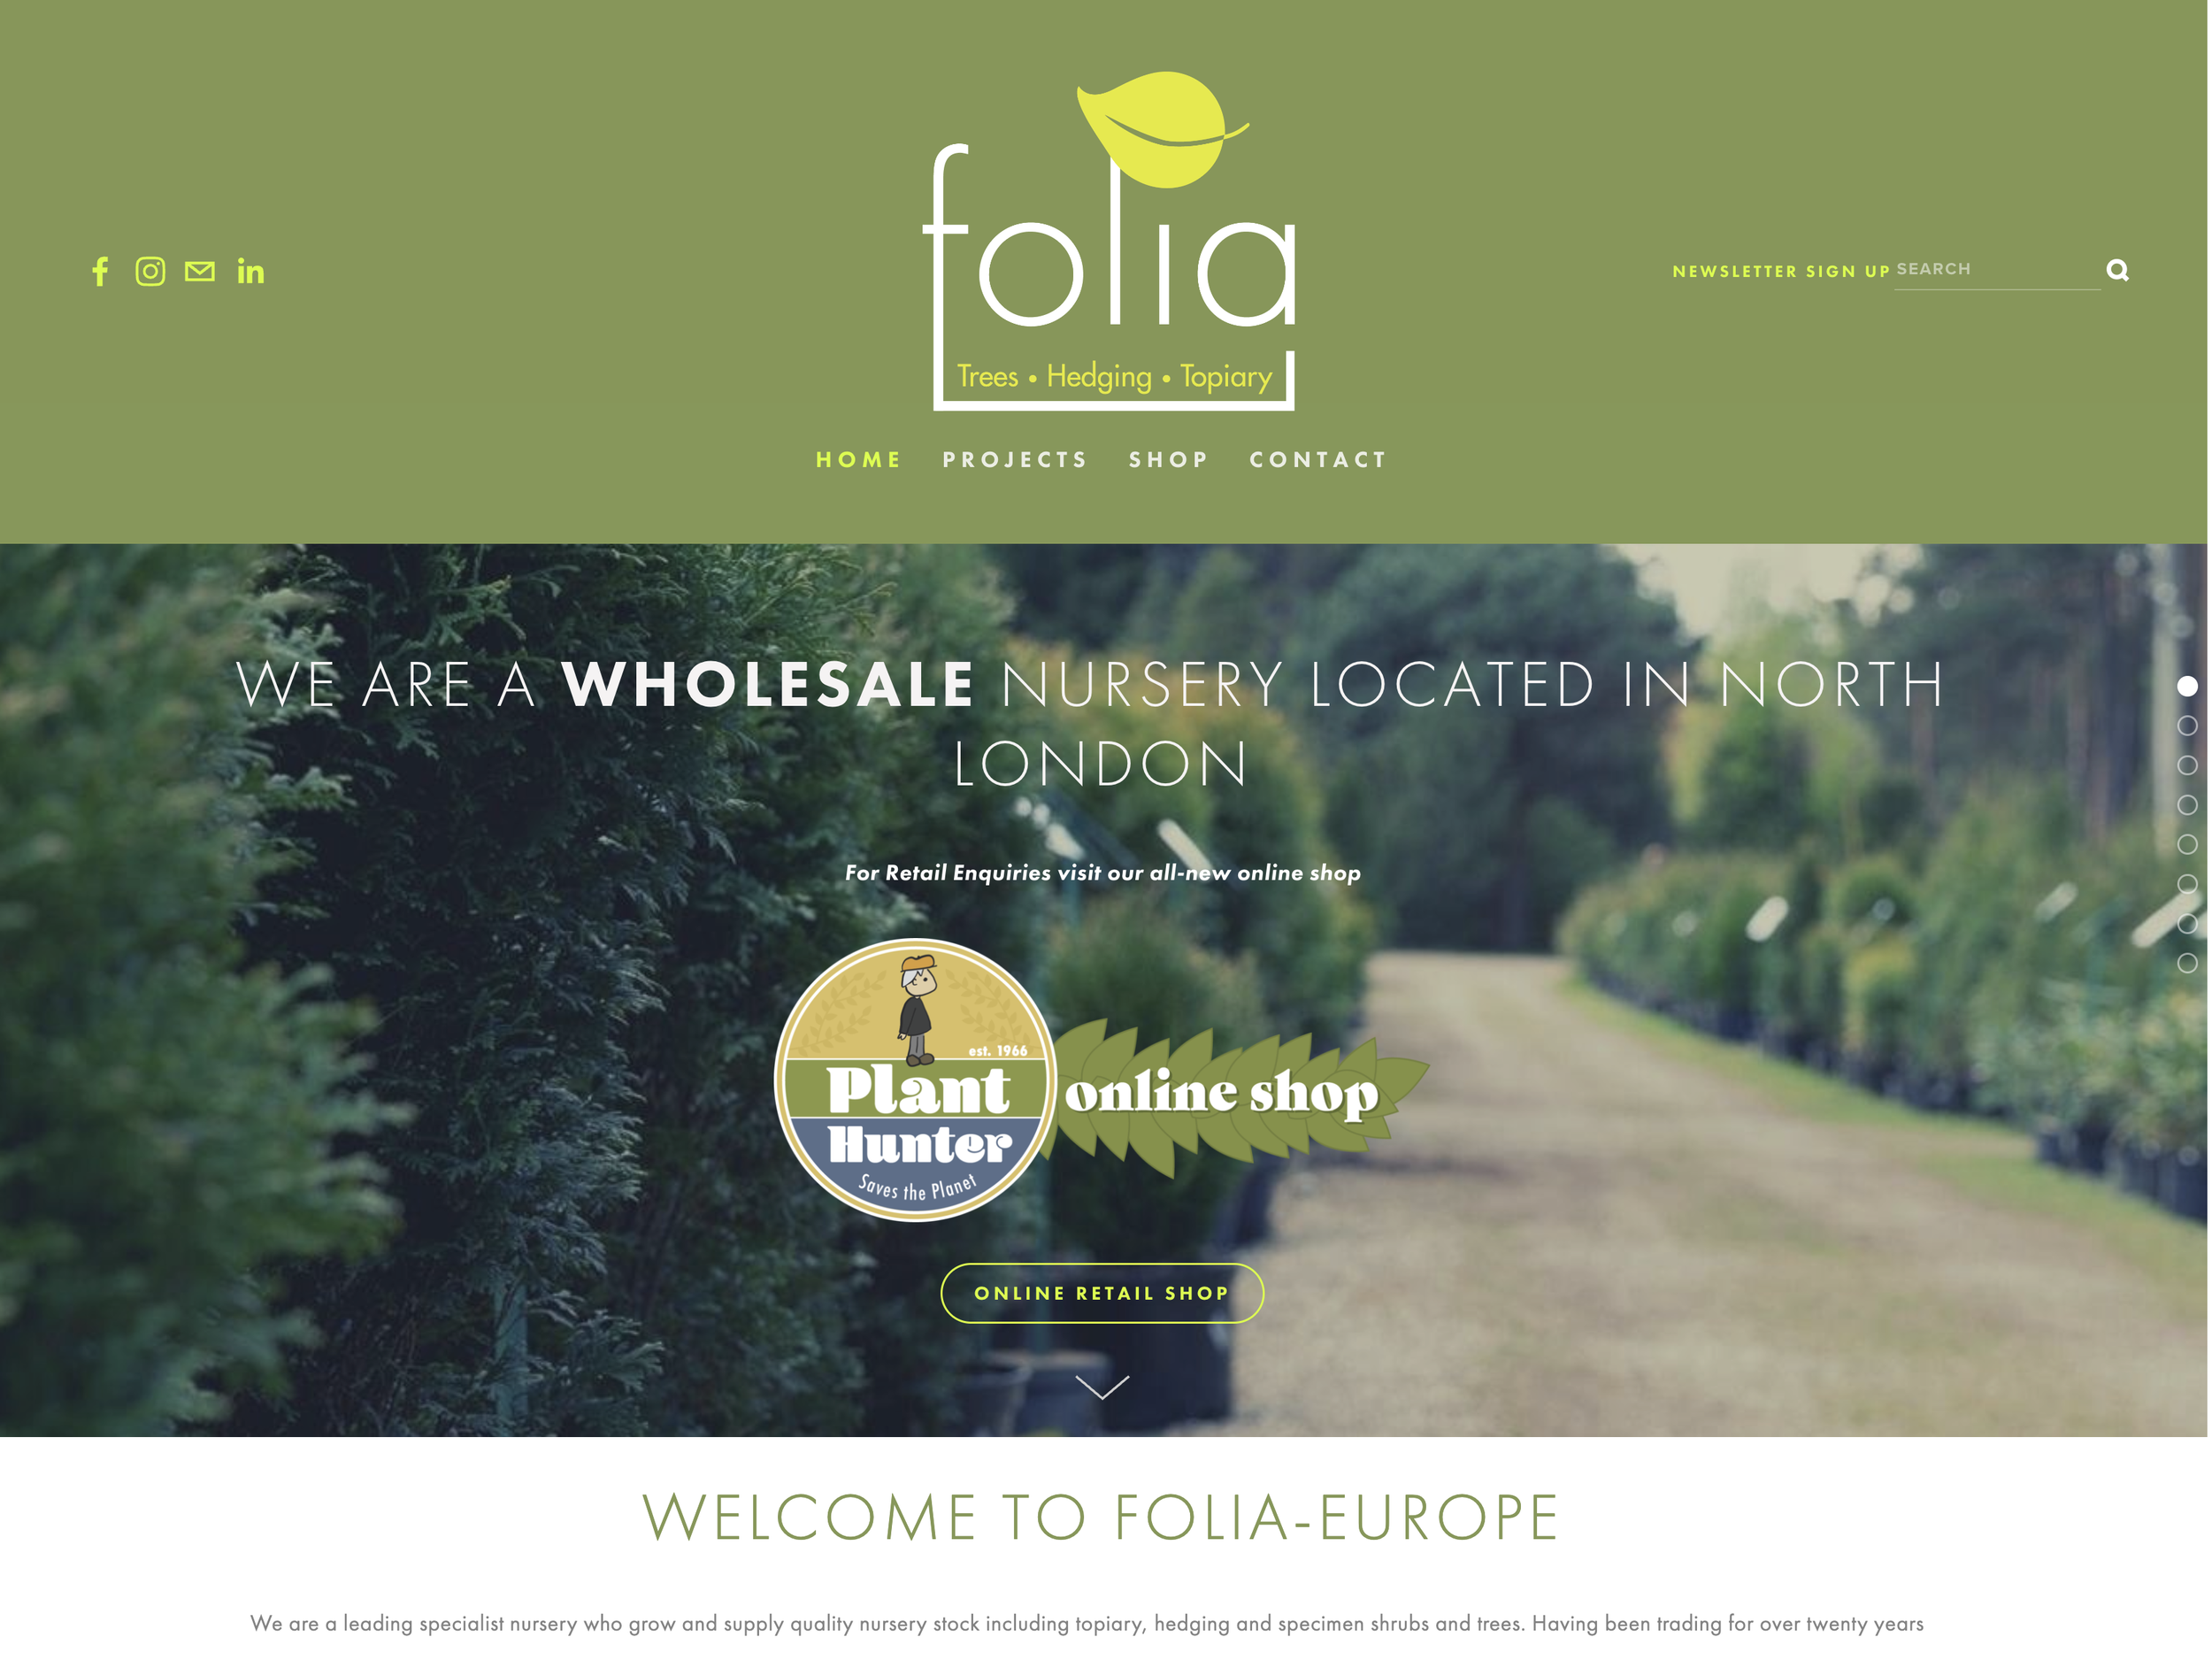 www.folia-europe.com